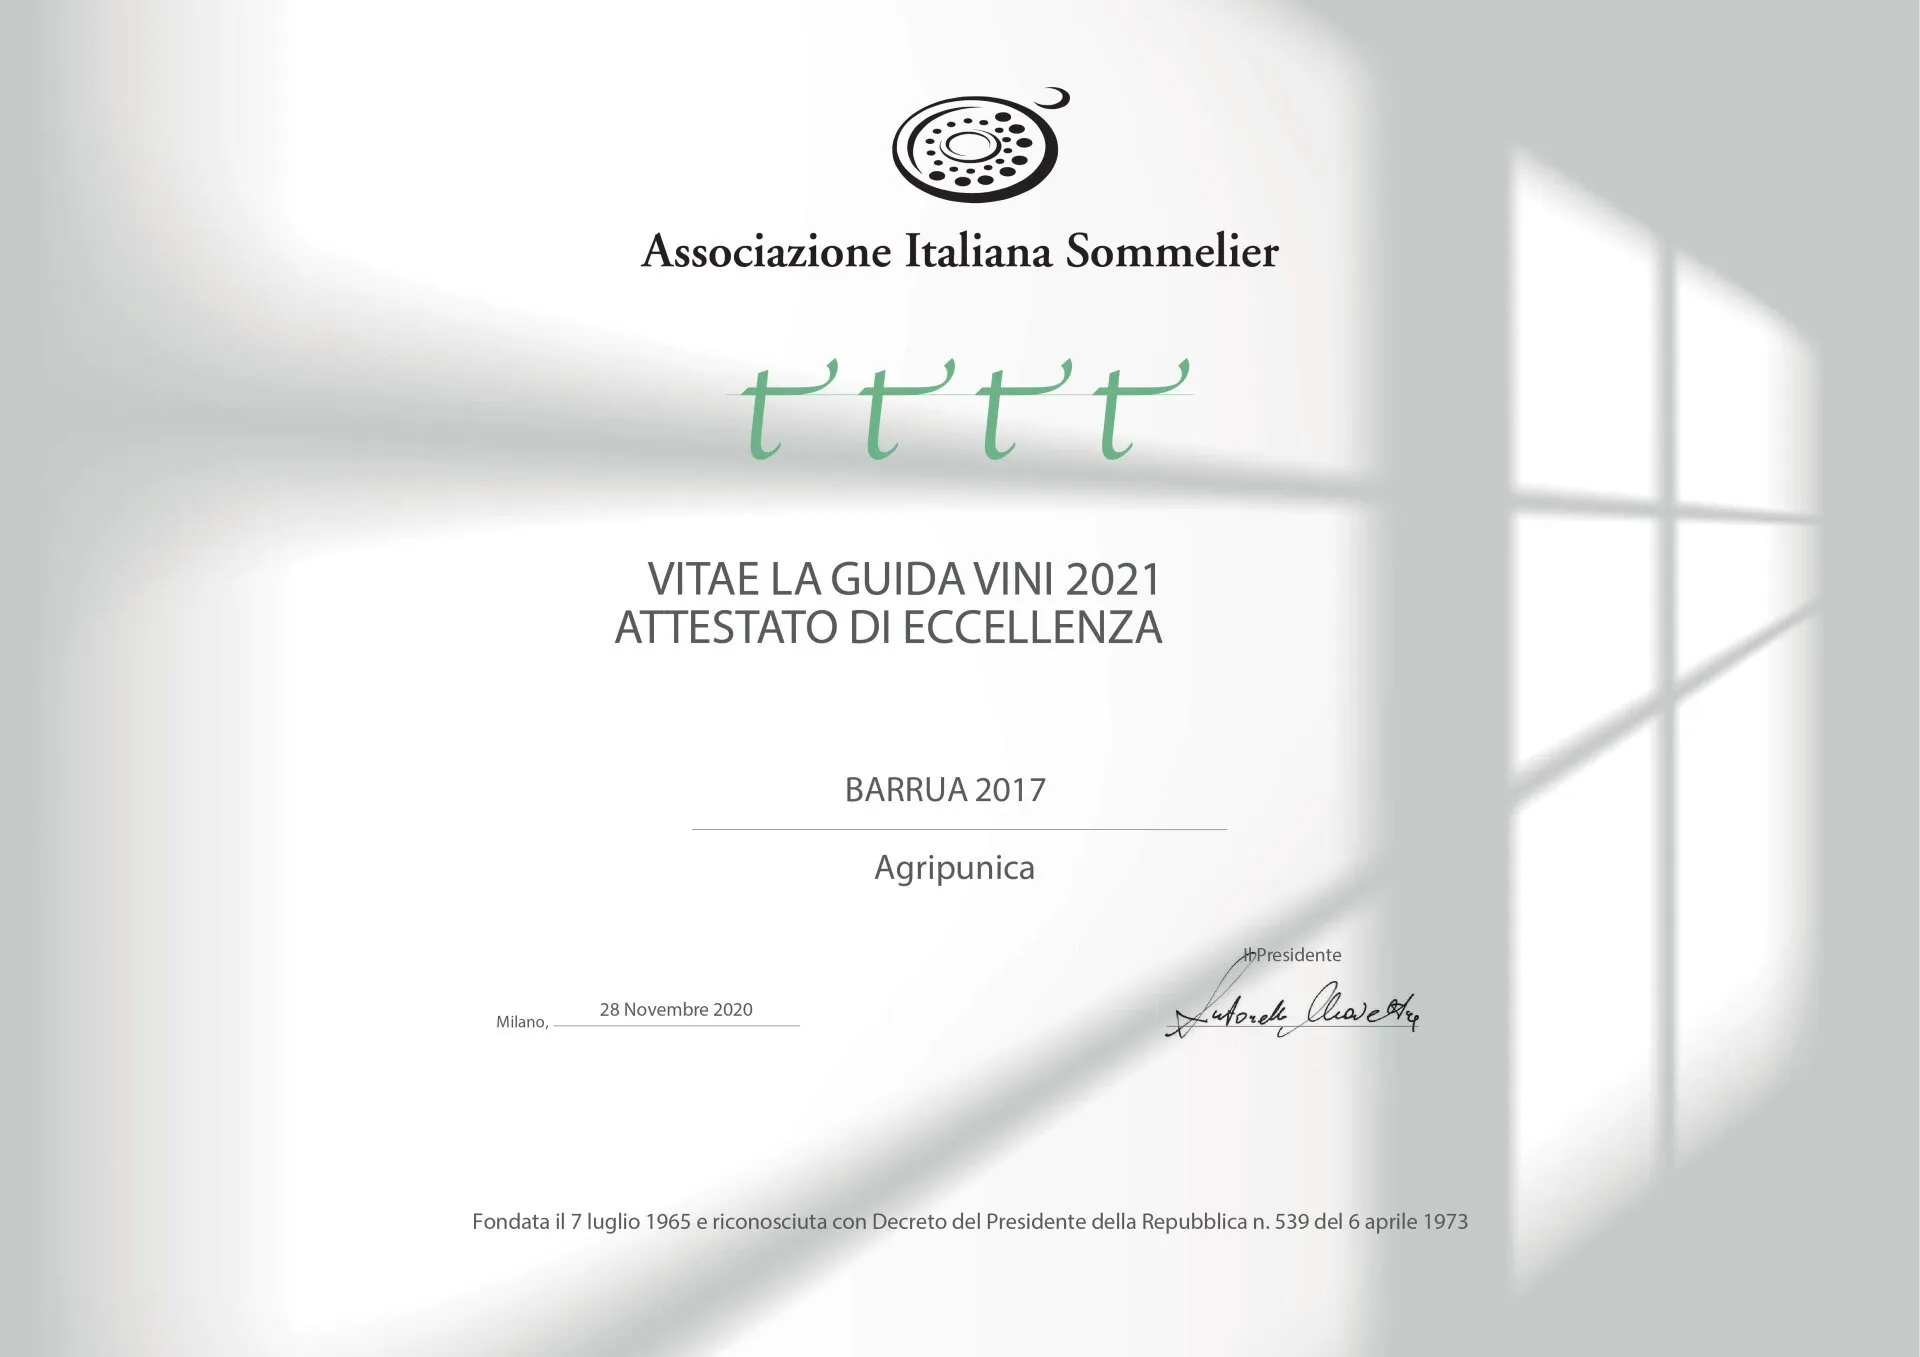 Associazione Italiana Sommelier - Attestato di eccellenza 2021